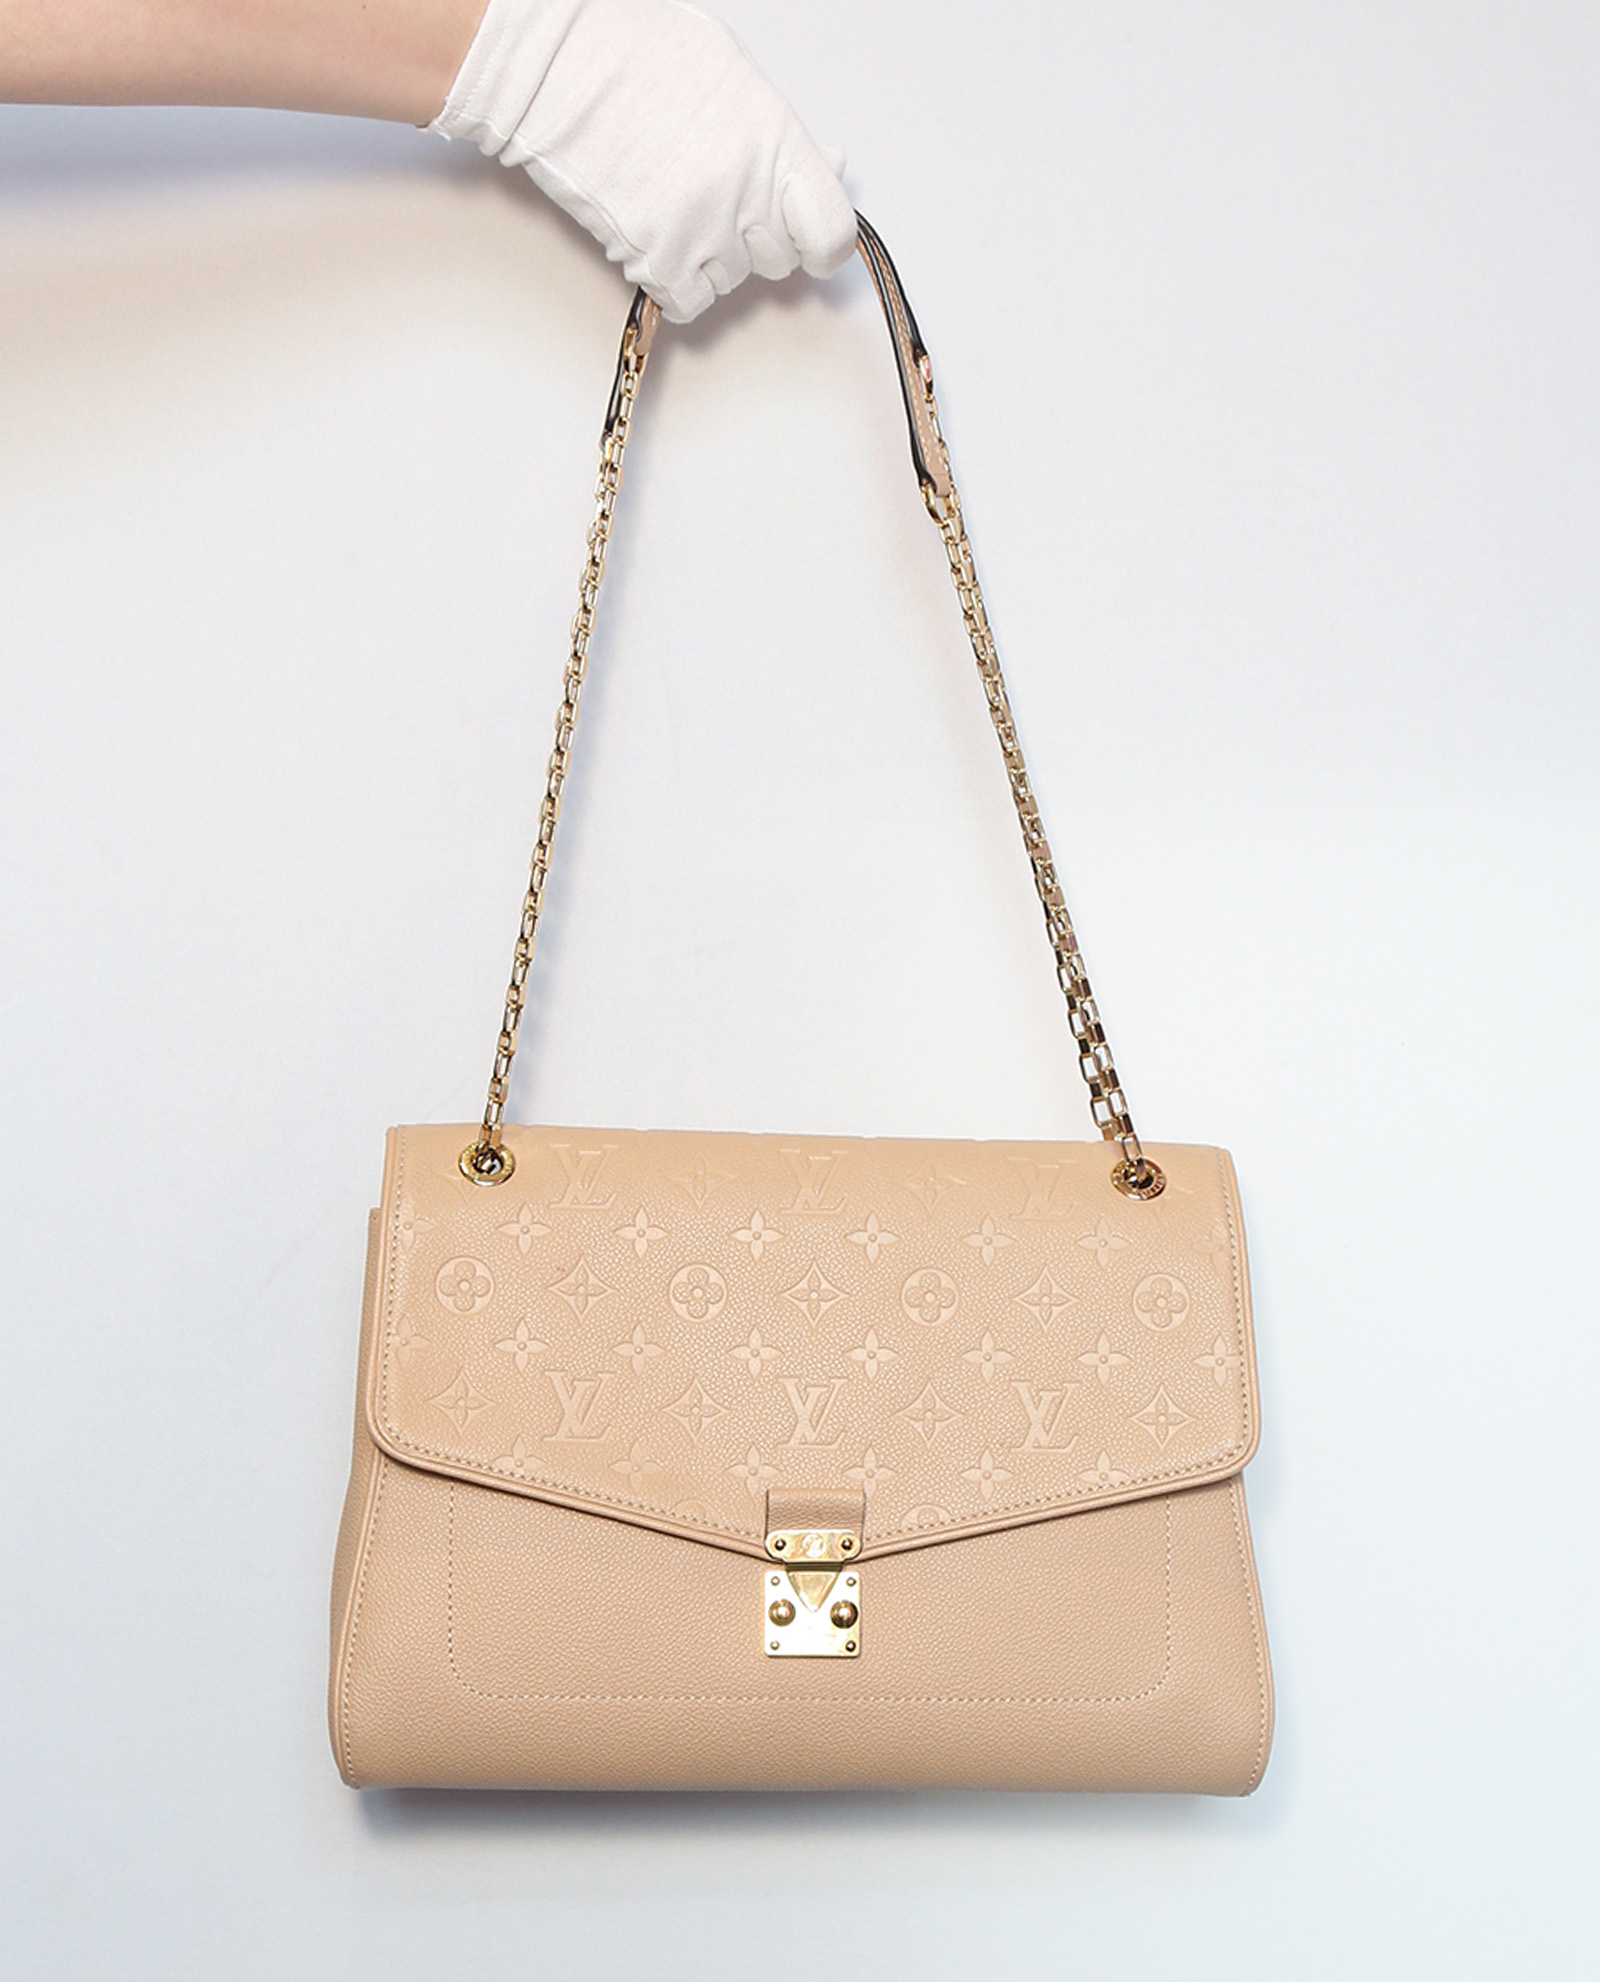 Louis Vuitton Empreinte Leather Dune St Germain mm Bag (2015)